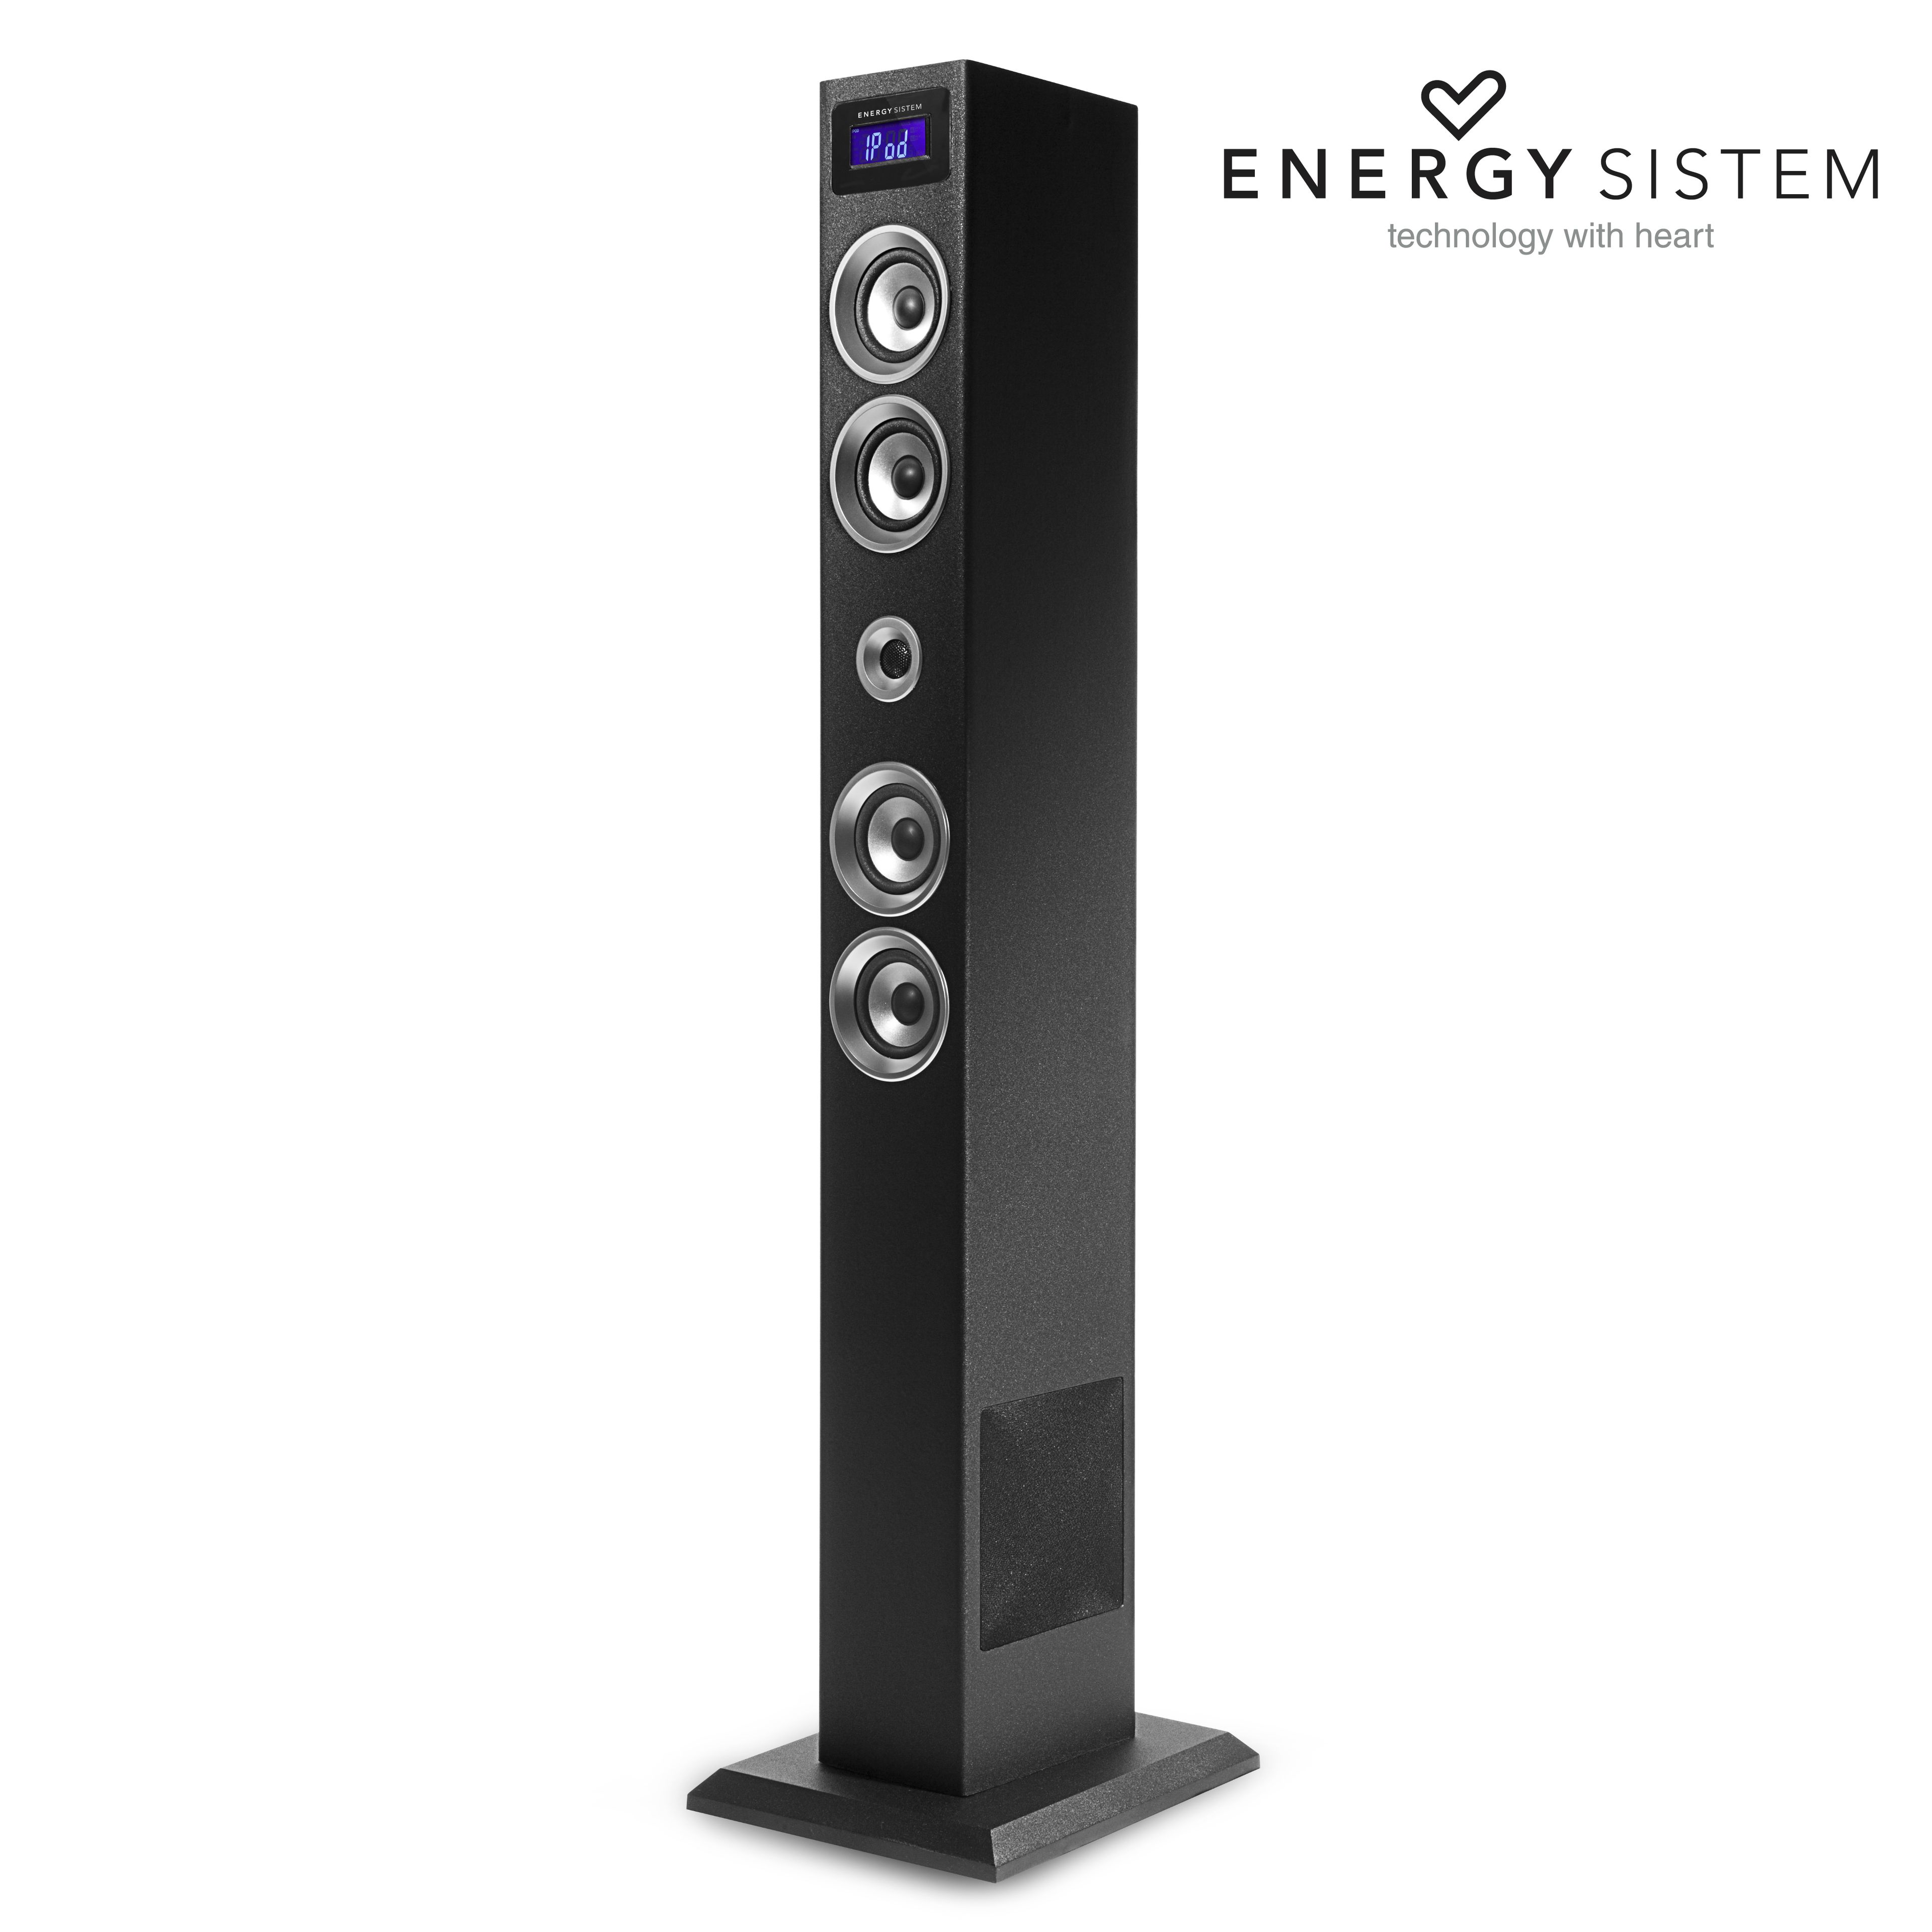 Concurso Transcendence: ¡sorteamos una torre de sonido Energy Sistem!